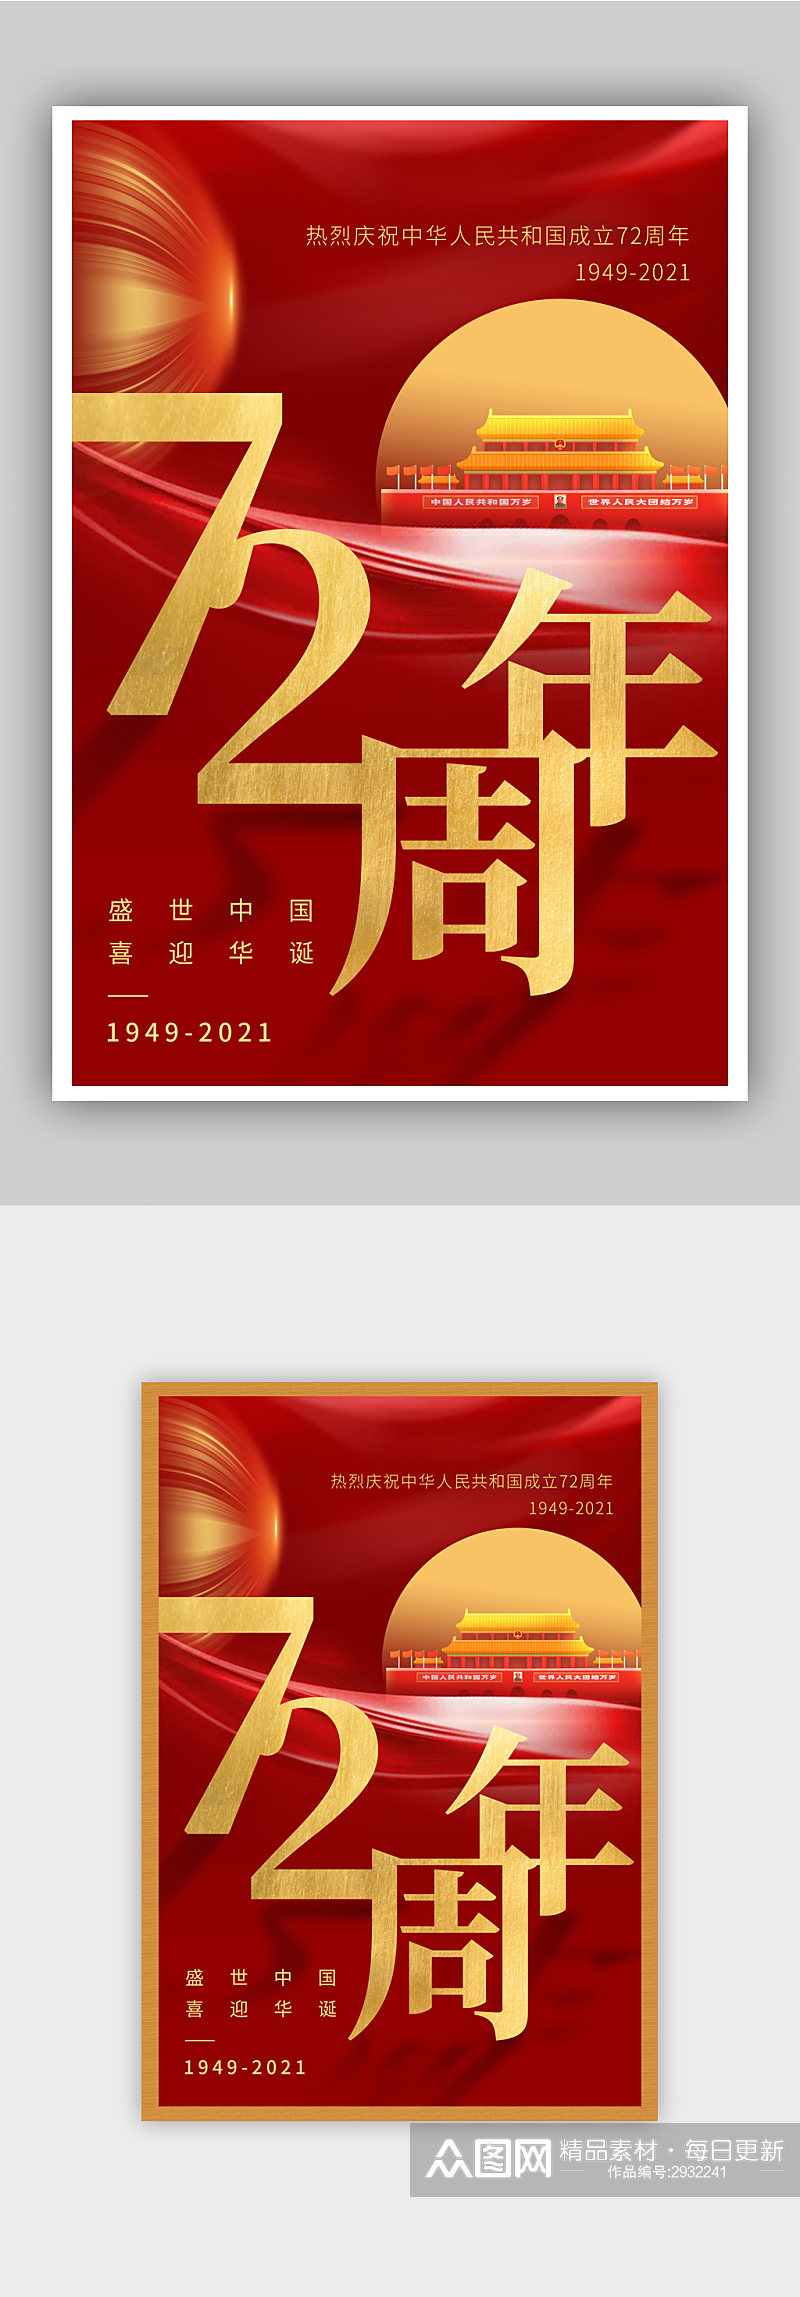 国庆节建国72周年节日海报素材